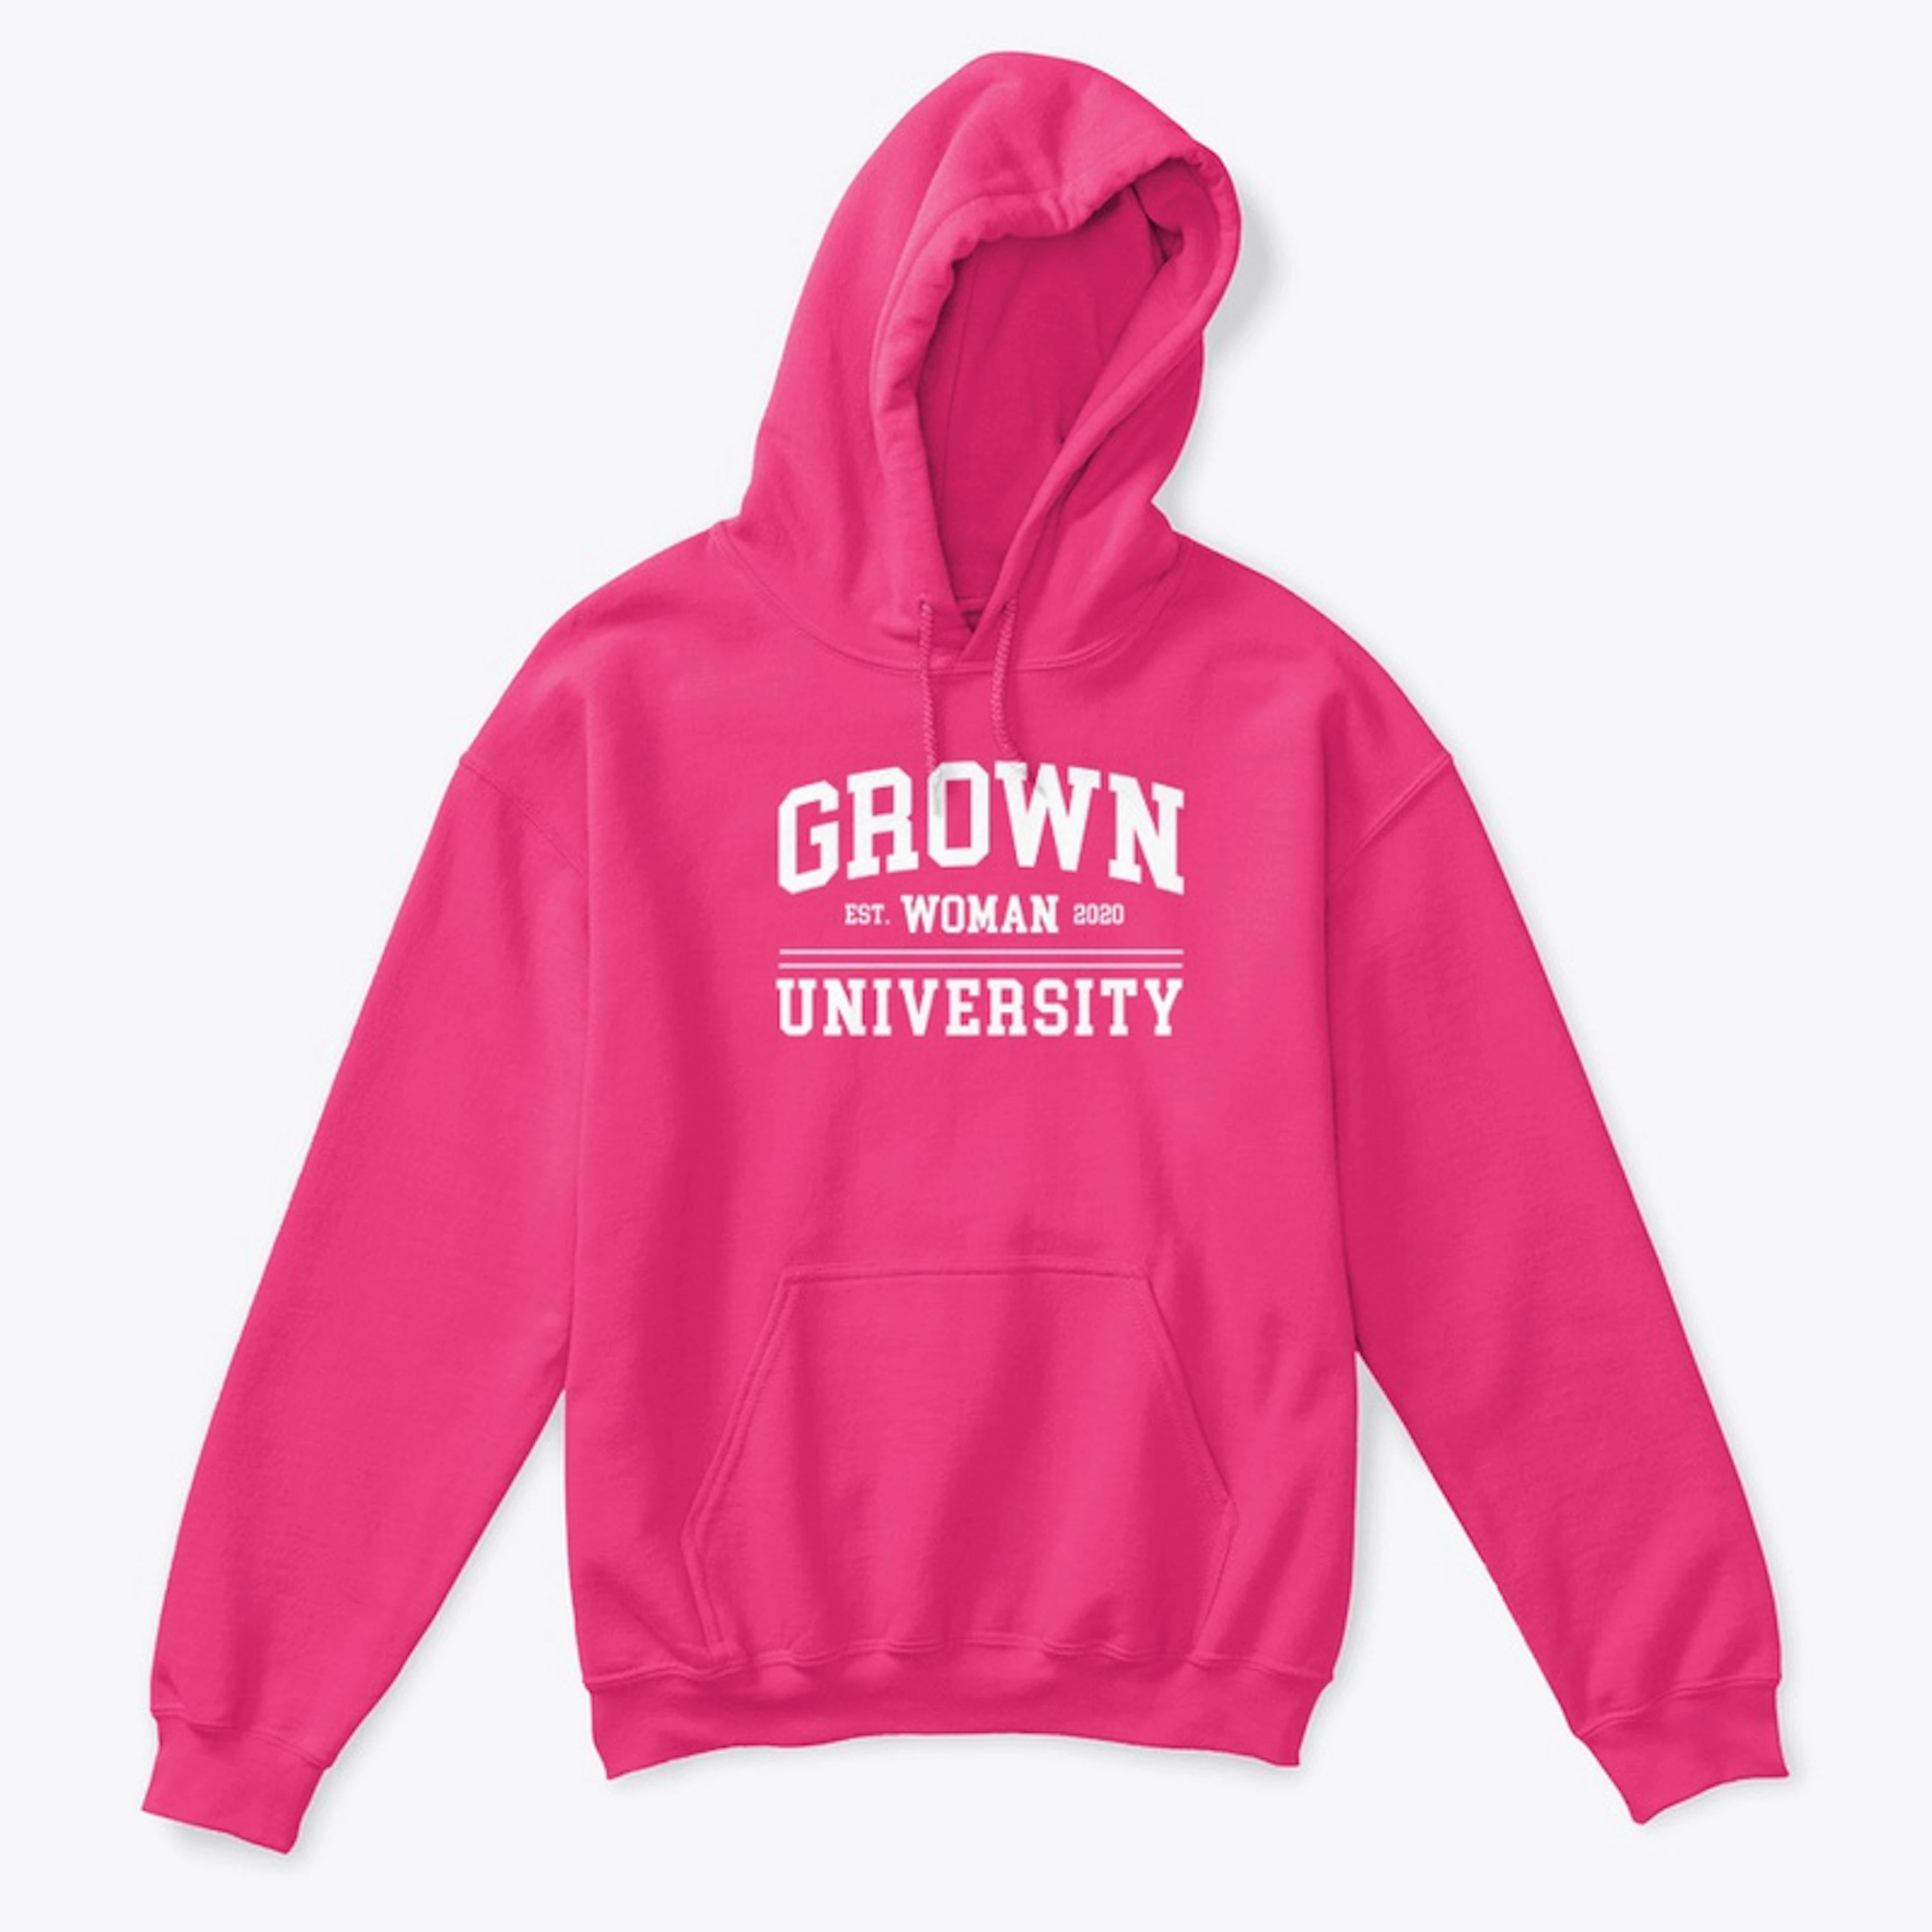 Grown Woman University